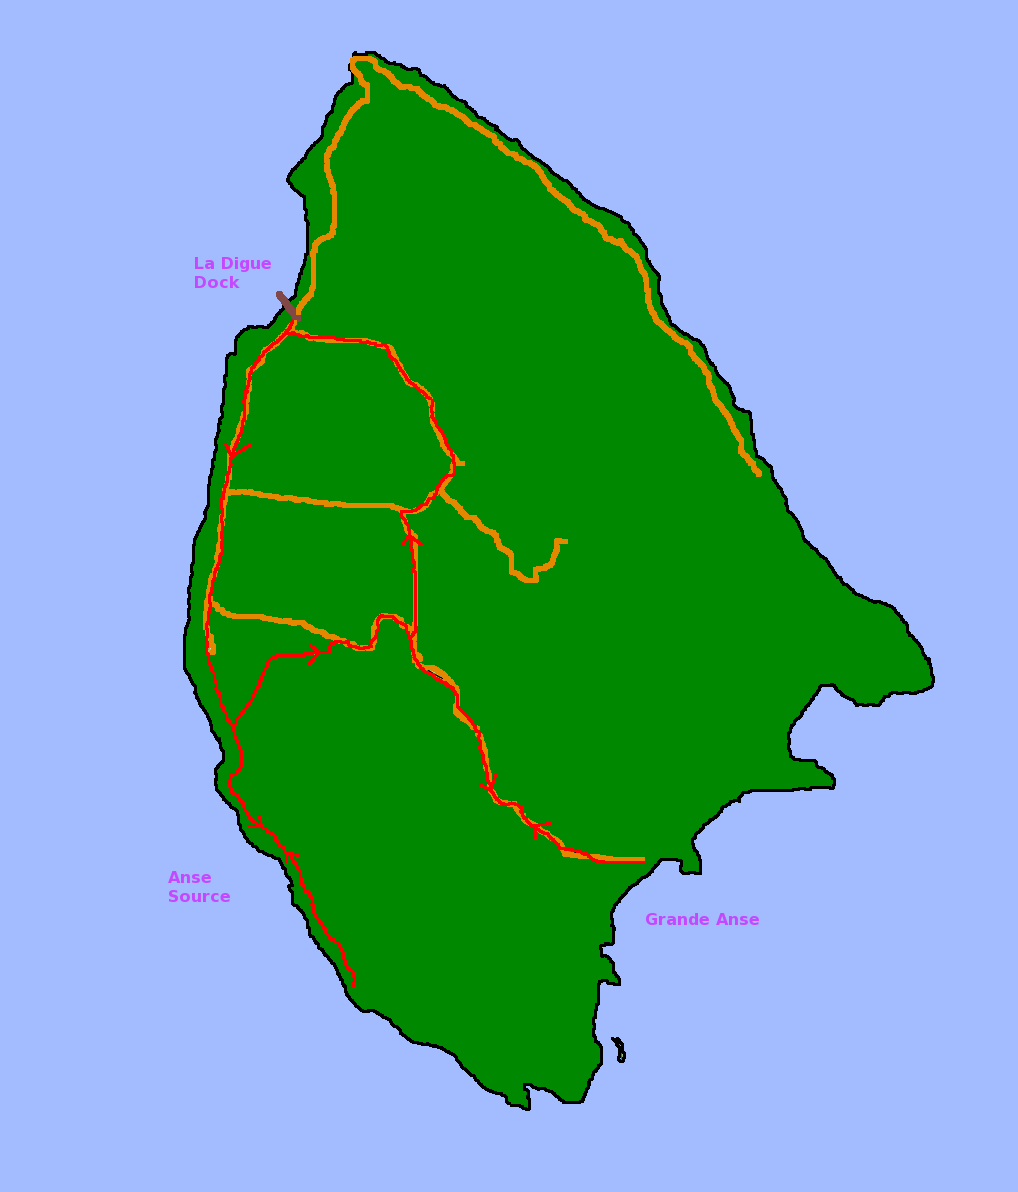 Karte La Digue mit eingetragener Radstrecke